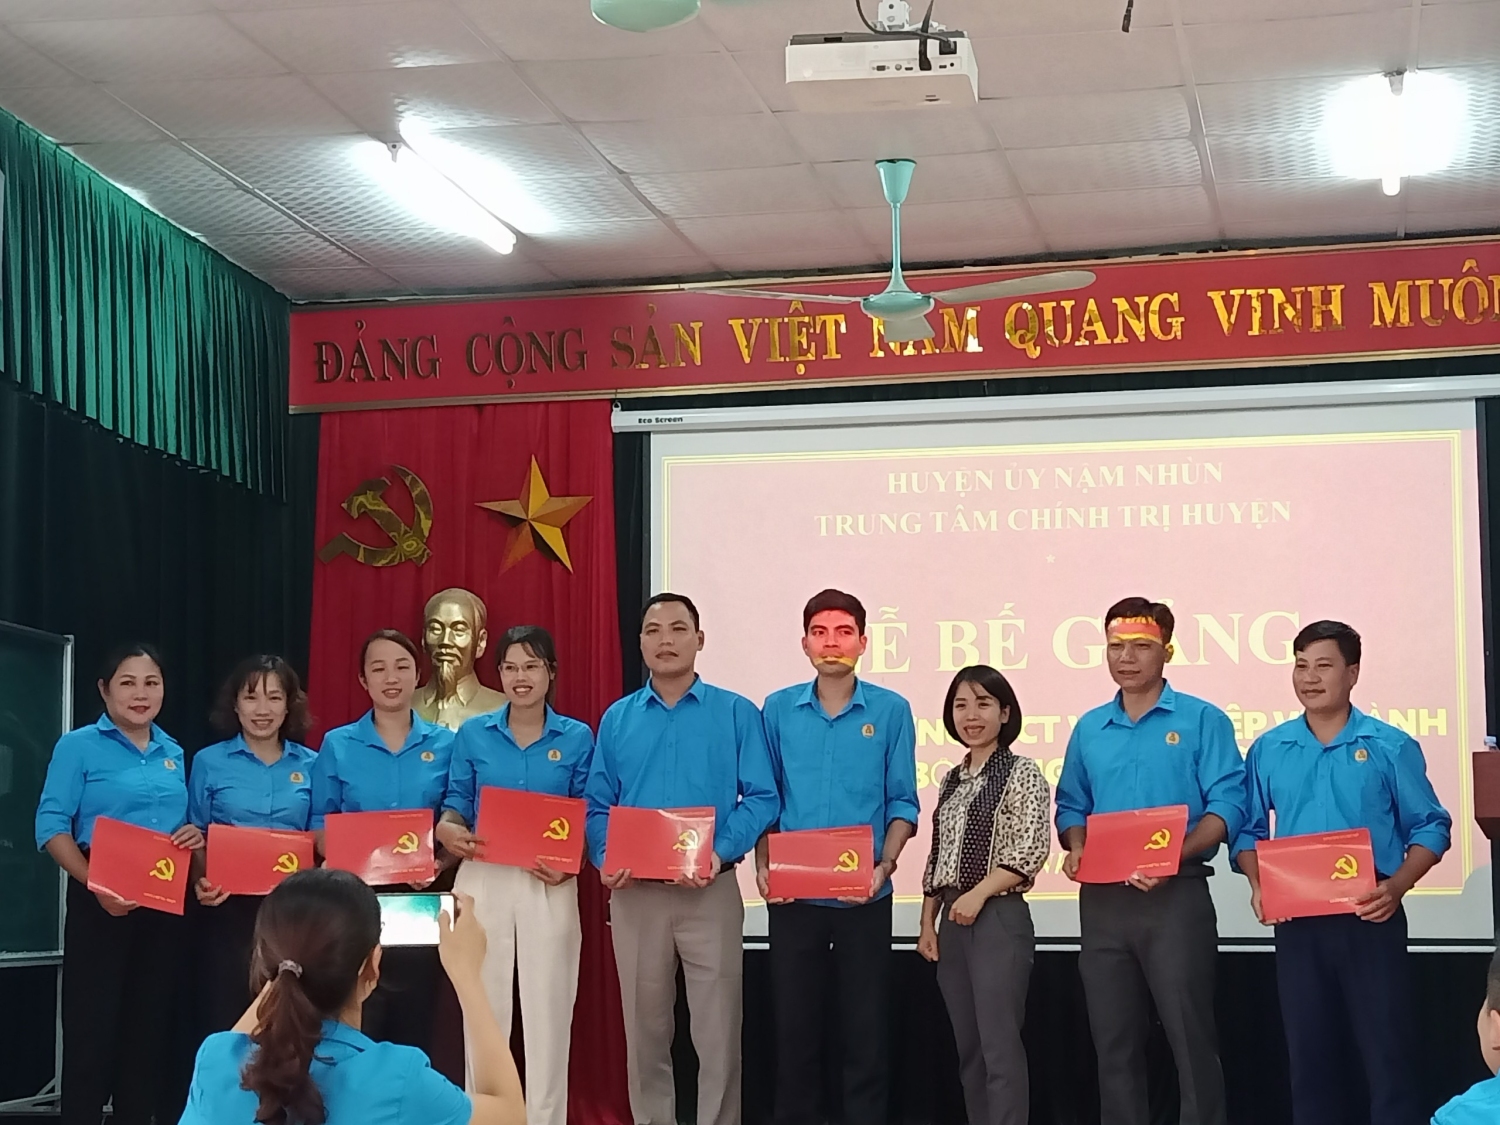 Đc Lê Kim Chung Phó Giám đốc Trung tâm trao Giấy chứng nhận cho các đồng chí học viên